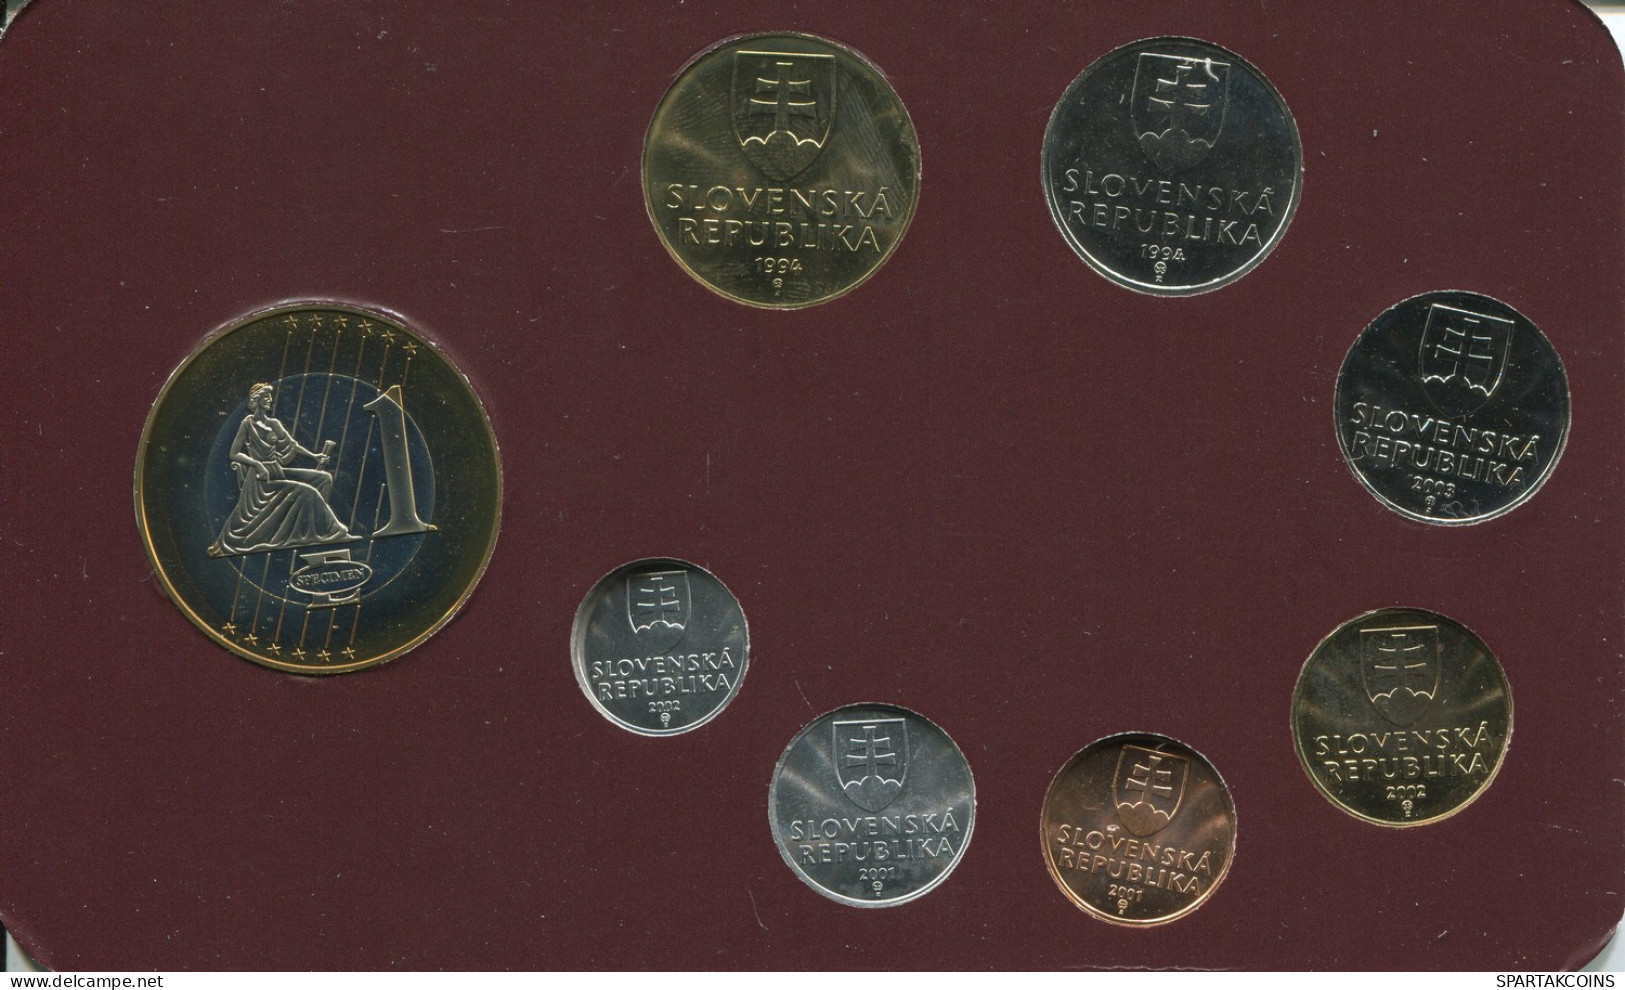 SLOVENSKA REPUBLIKA 1992-2004 Coin SET 7 Coin + MEDAL UNC #SET1253.13.U - Slowenien